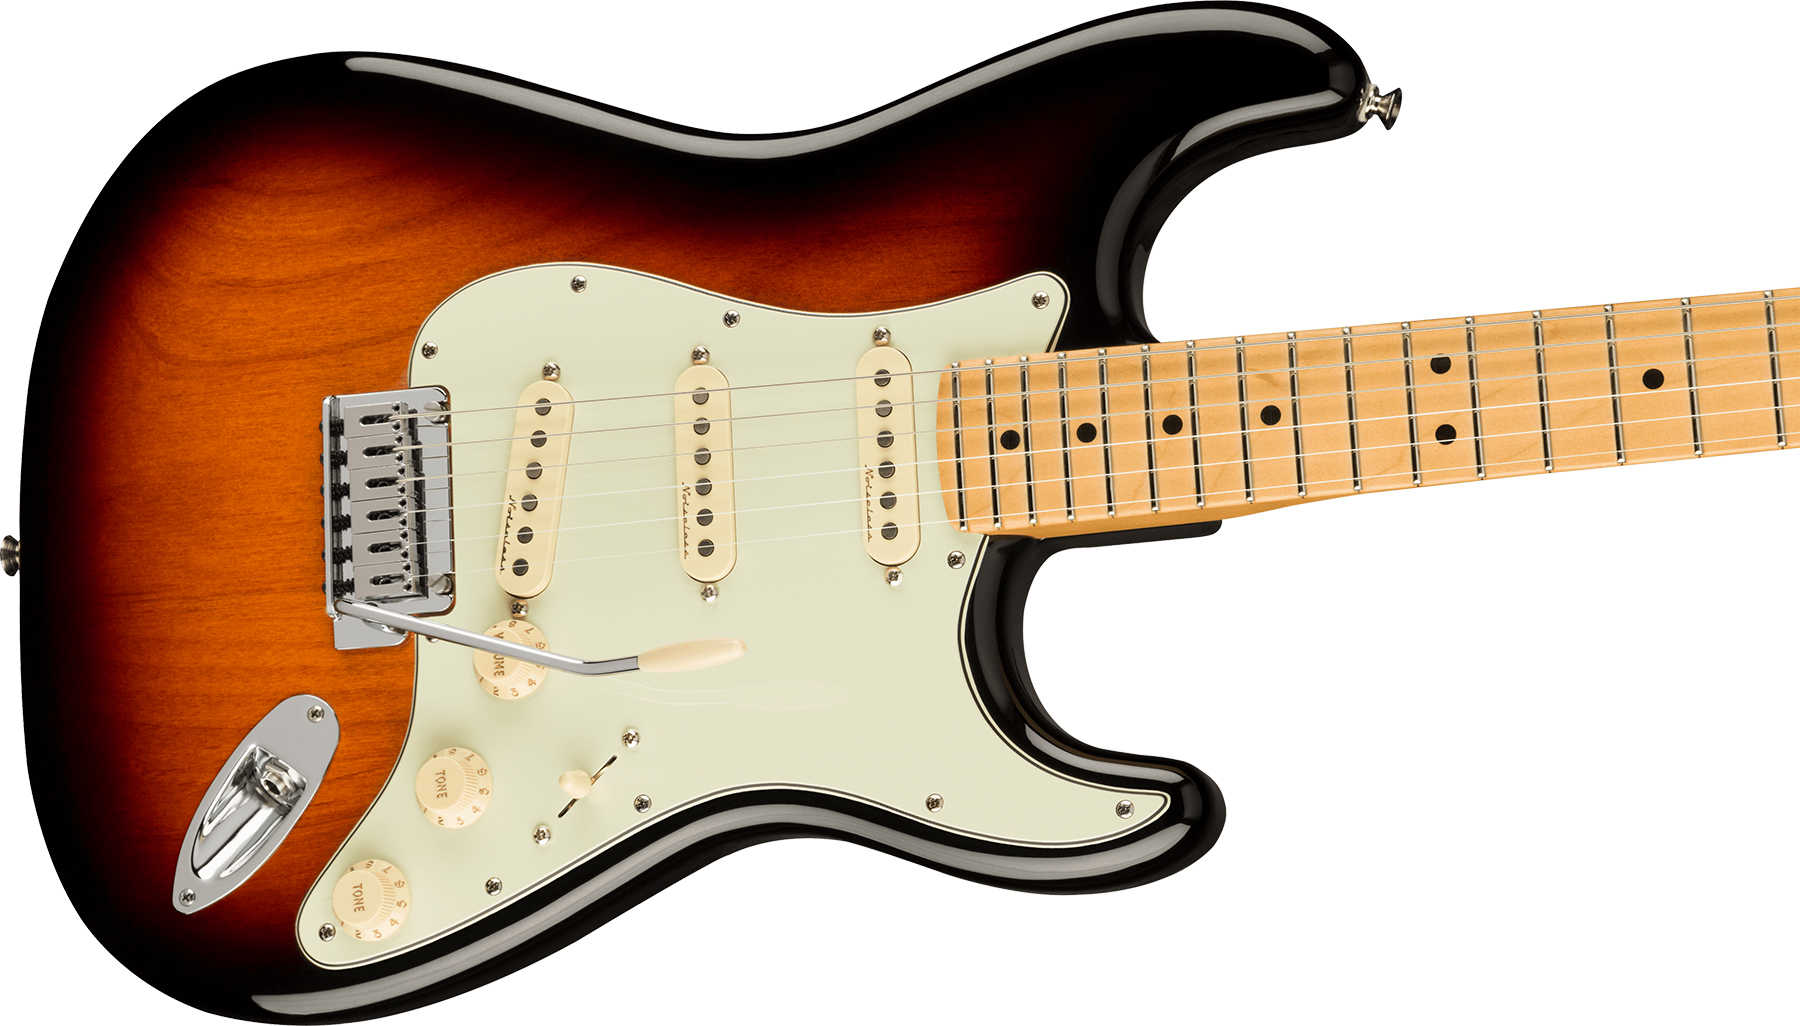 Fender Strat Player Plus Lh Mex Gaucher 3s Trem Mn - 3-color Sunburst - Linkshandige elektrische gitaar - Variation 2